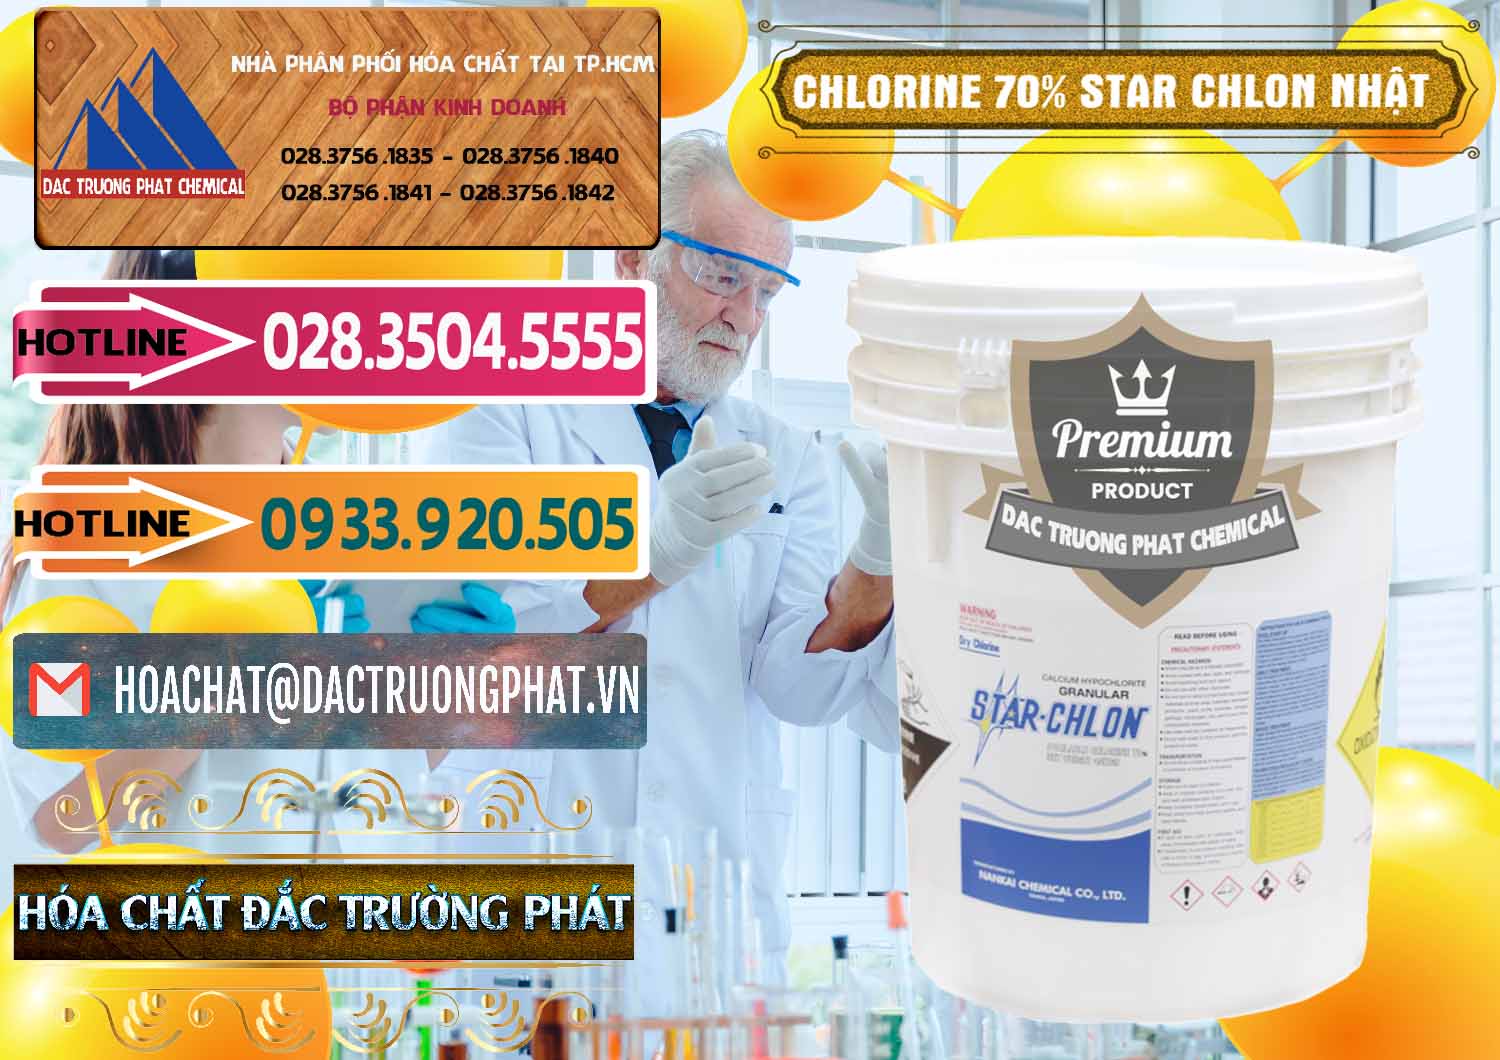 Cty chuyên nhập khẩu & bán Clorin – Chlorine 70% Star Chlon Nhật Bản Japan - 0243 - Cty nhập khẩu _ cung cấp hóa chất tại TP.HCM - dactruongphat.vn